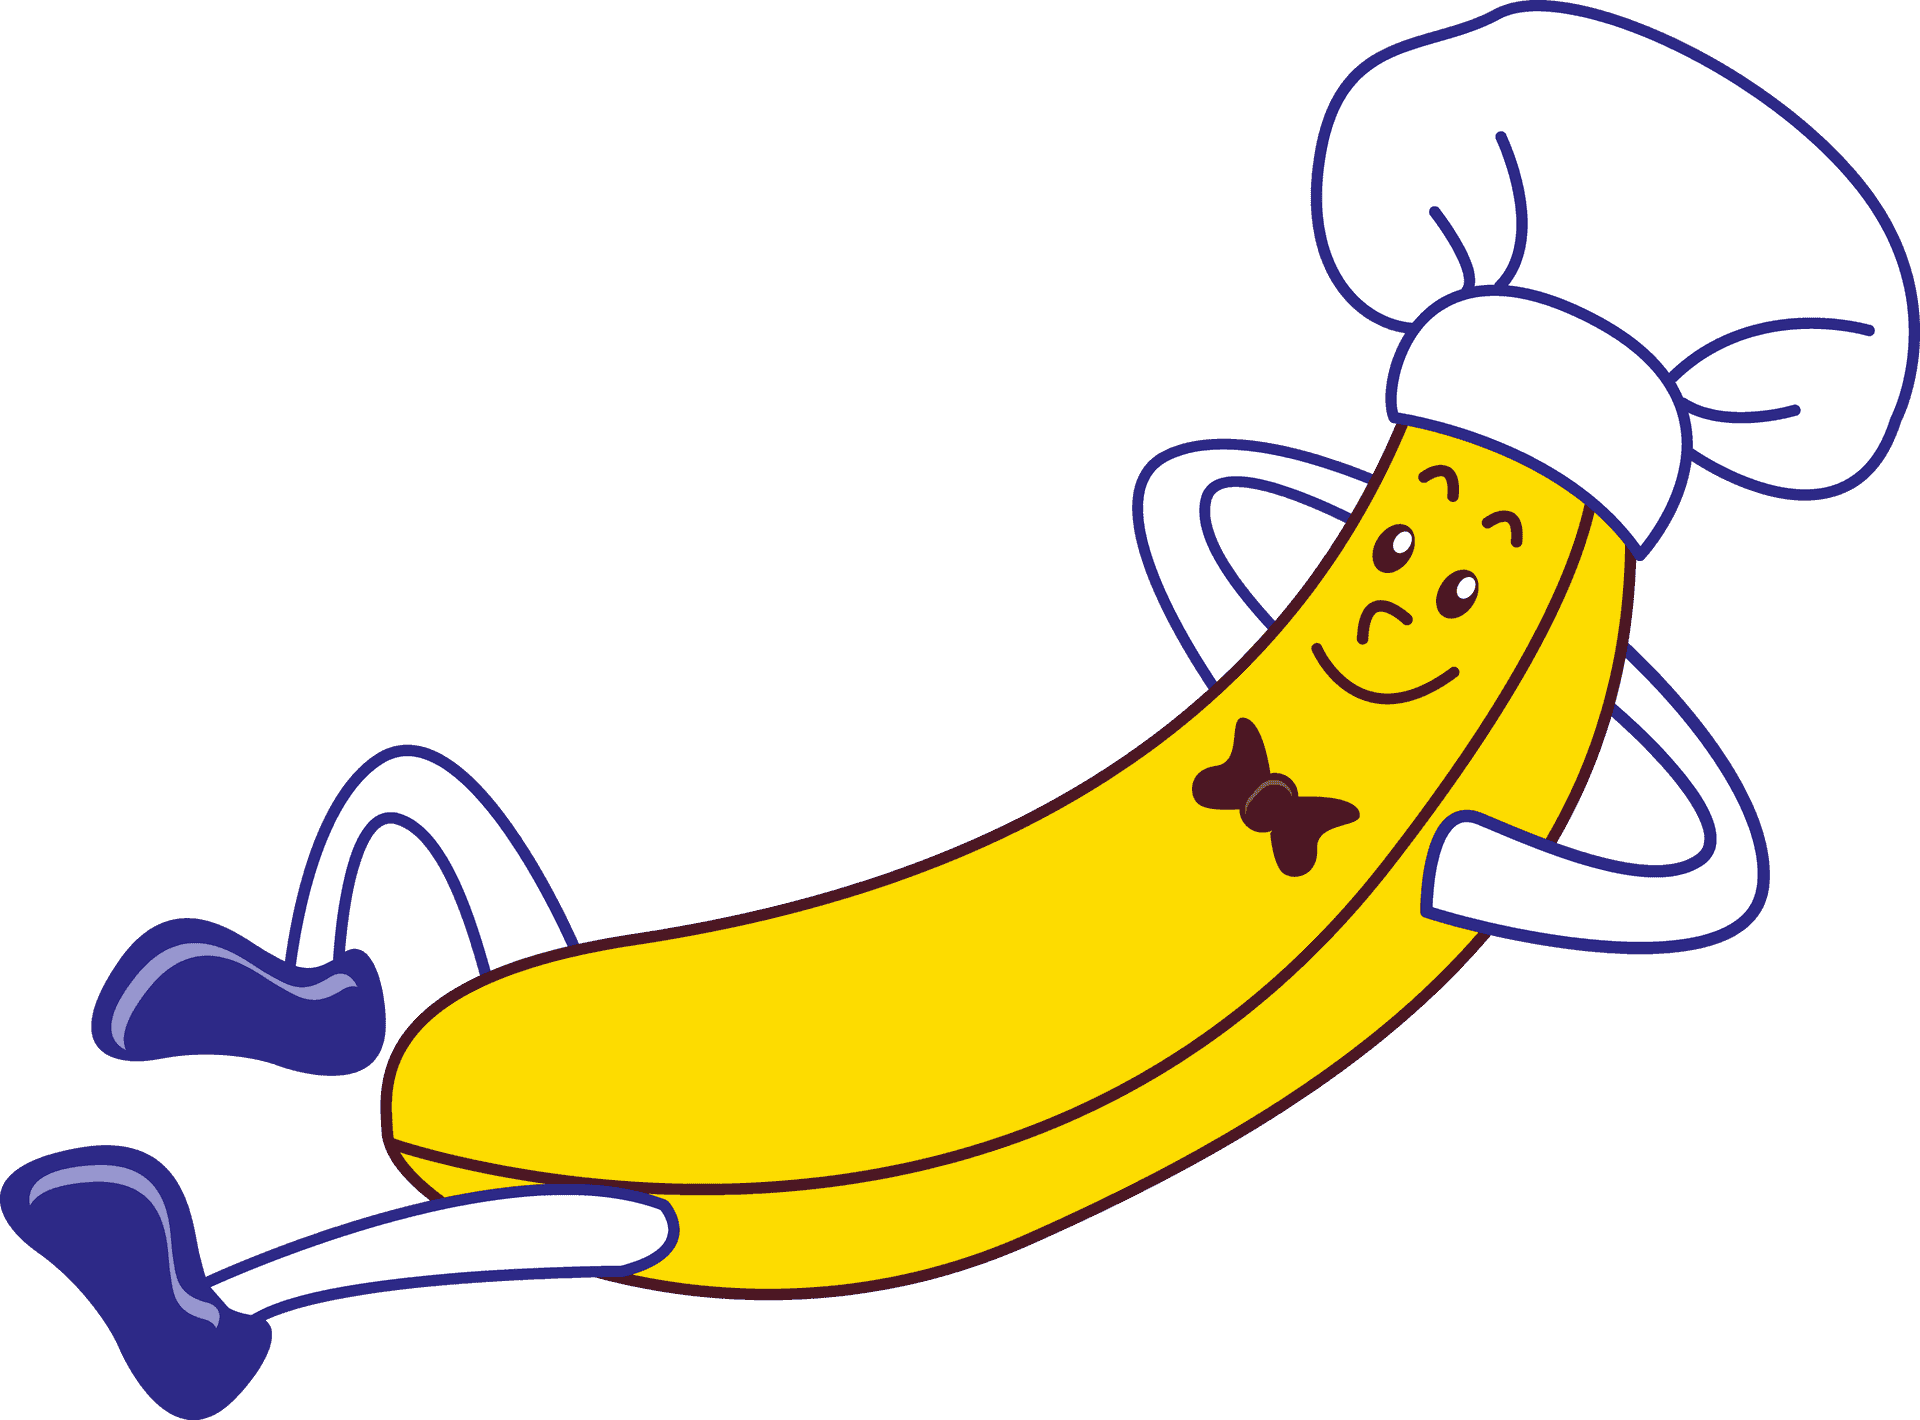 Chef Banana Cartoon Character PNG image